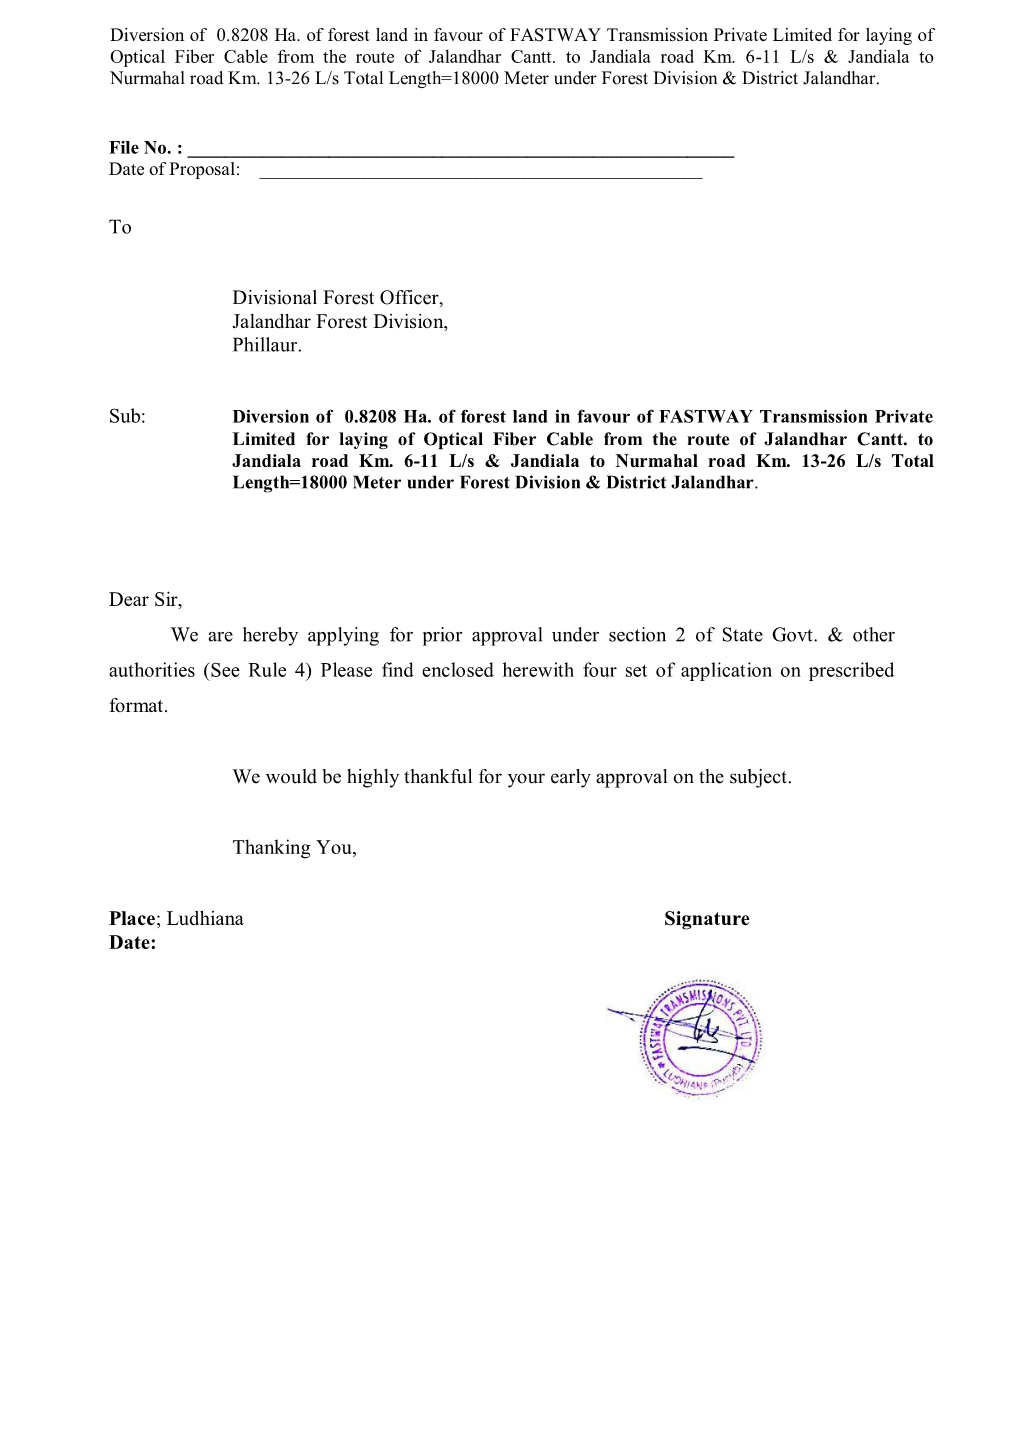 To Divisional Forest Officer, Jalandhar Forest Division, Phillaur